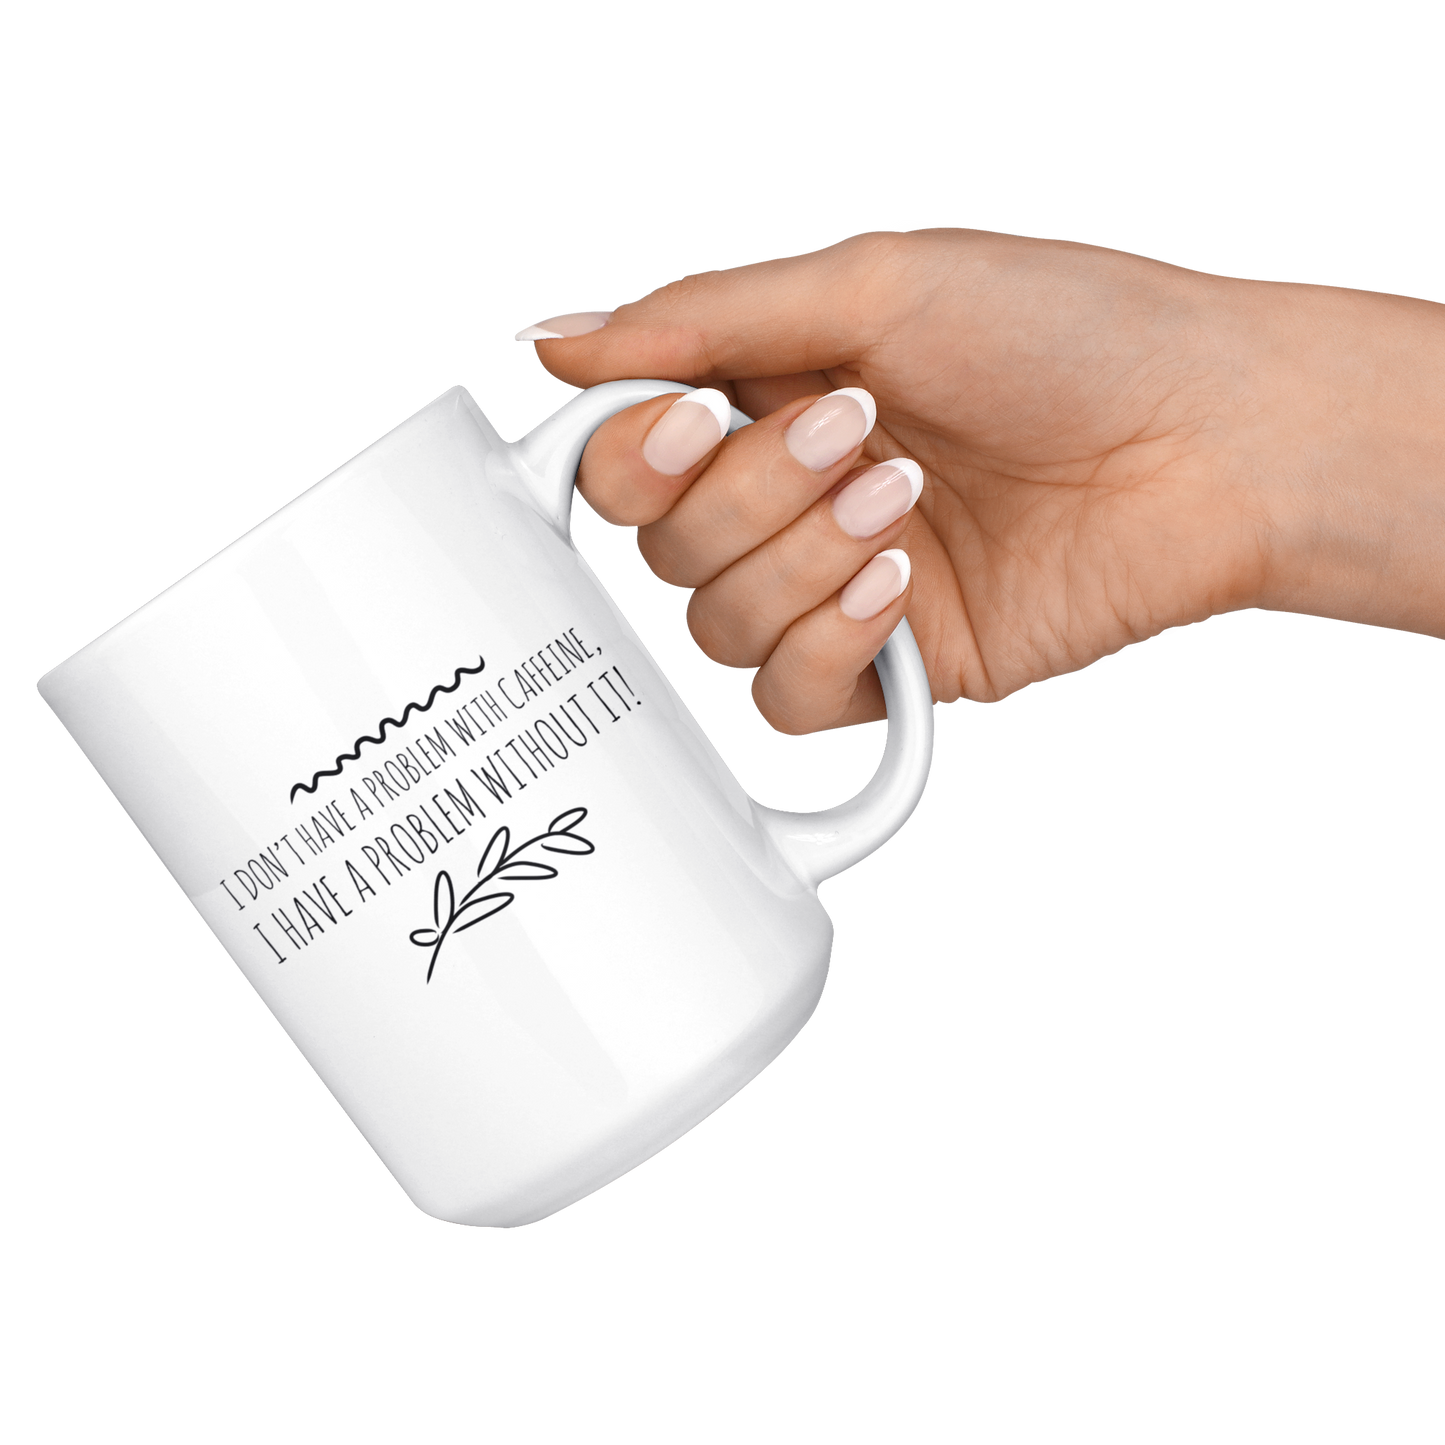 Mug with Saying | "I don't have a problem with caffeine..." Mug | 11 oz. or 15 oz. Ceramic Mug